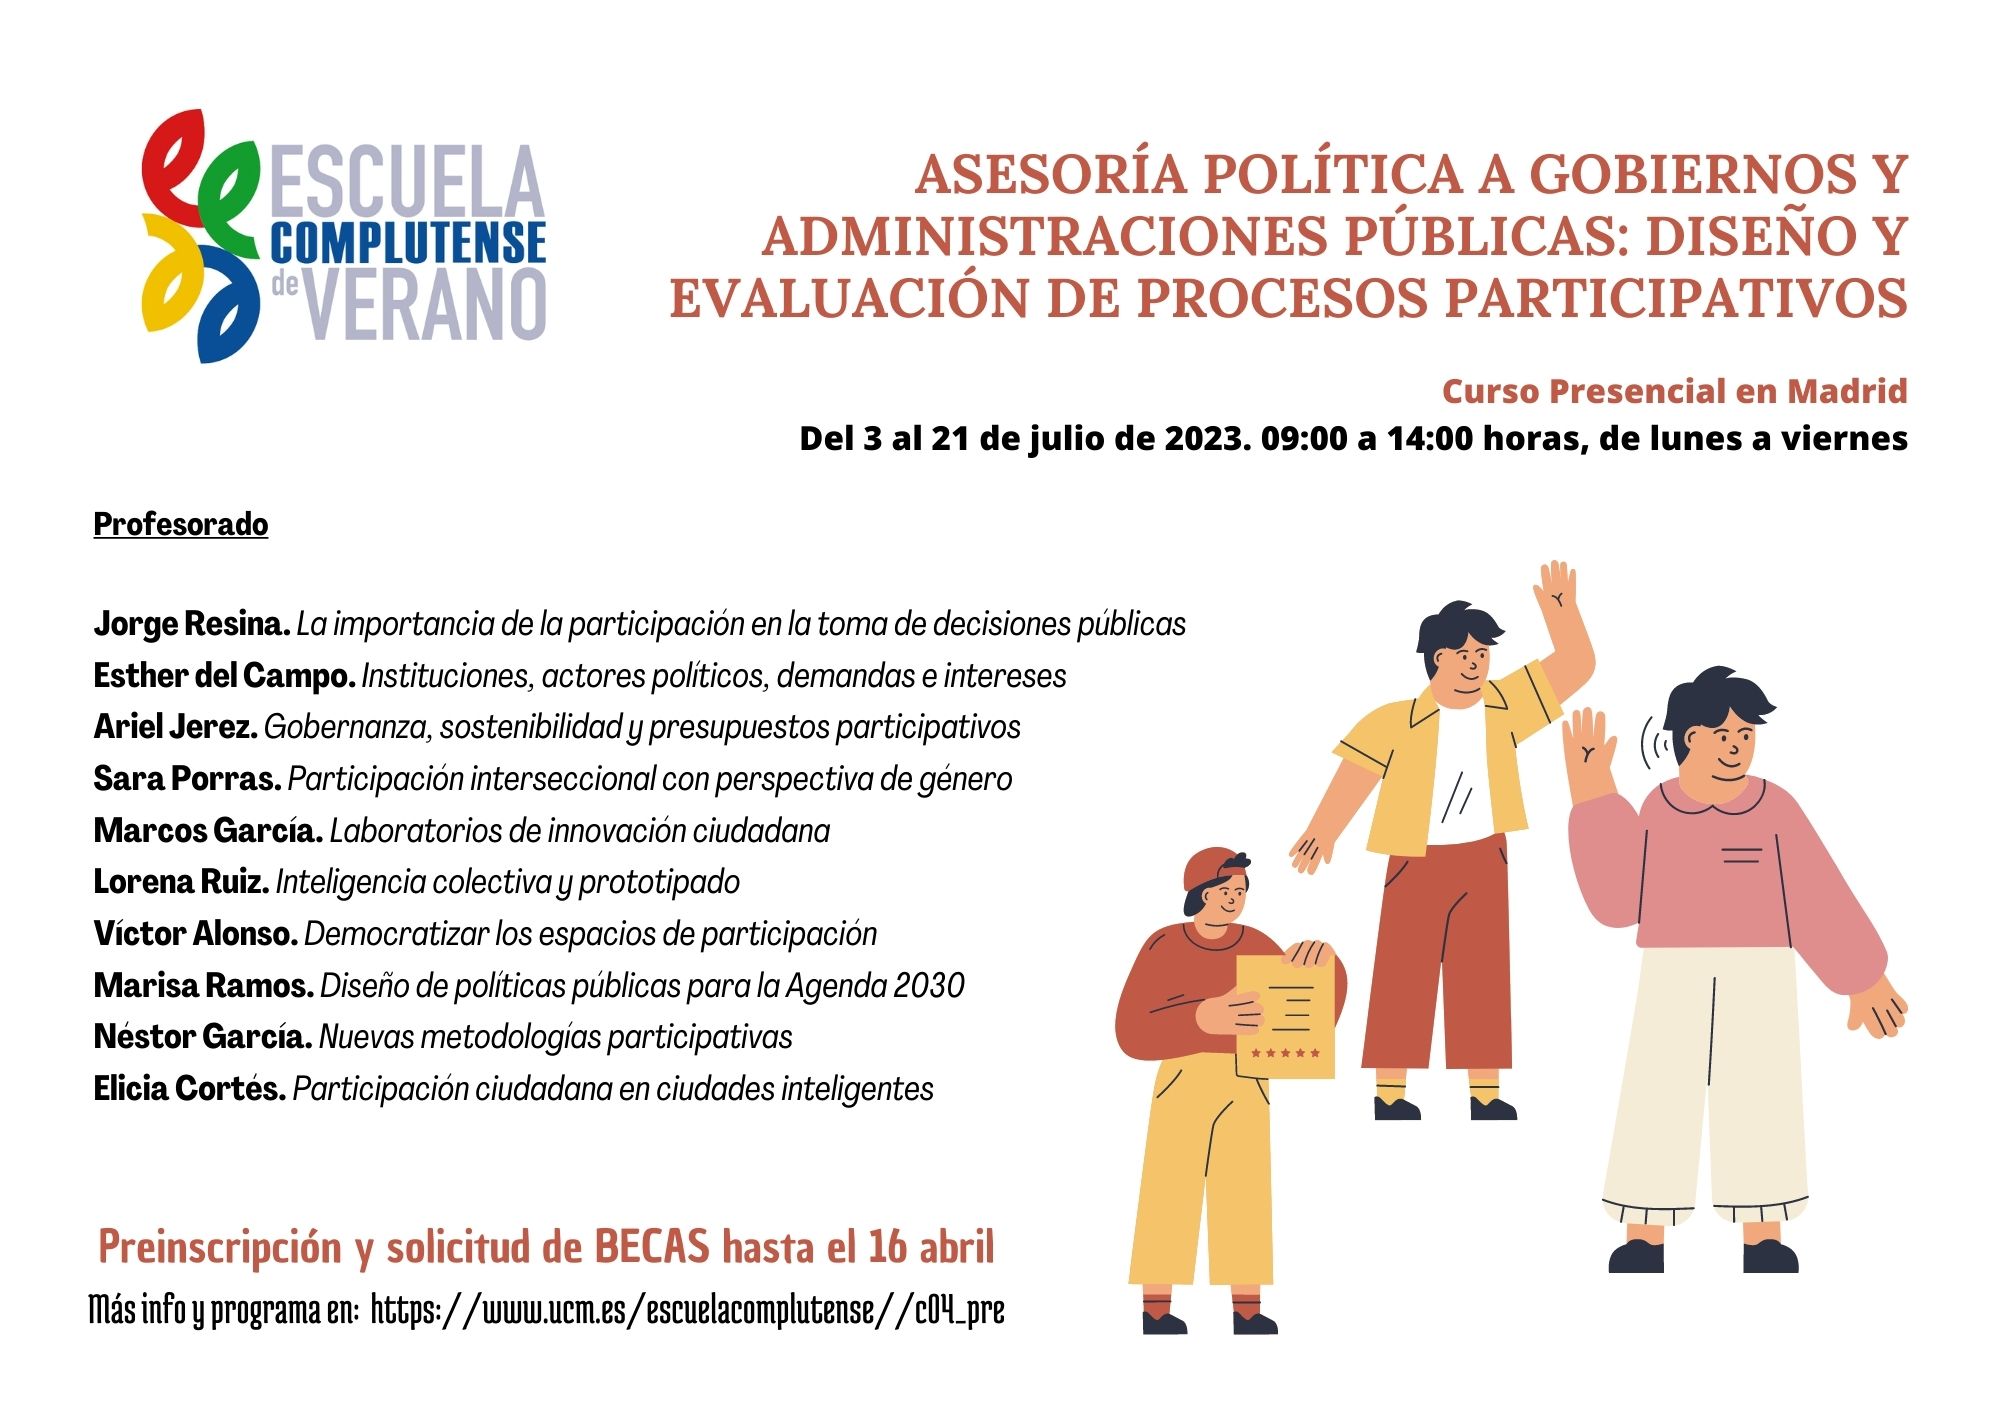 Curso de verano: "Asesoría Política a Gobiernos y Administraciones Públicas: Diseño y Evaluación de Procesos Participativos". 